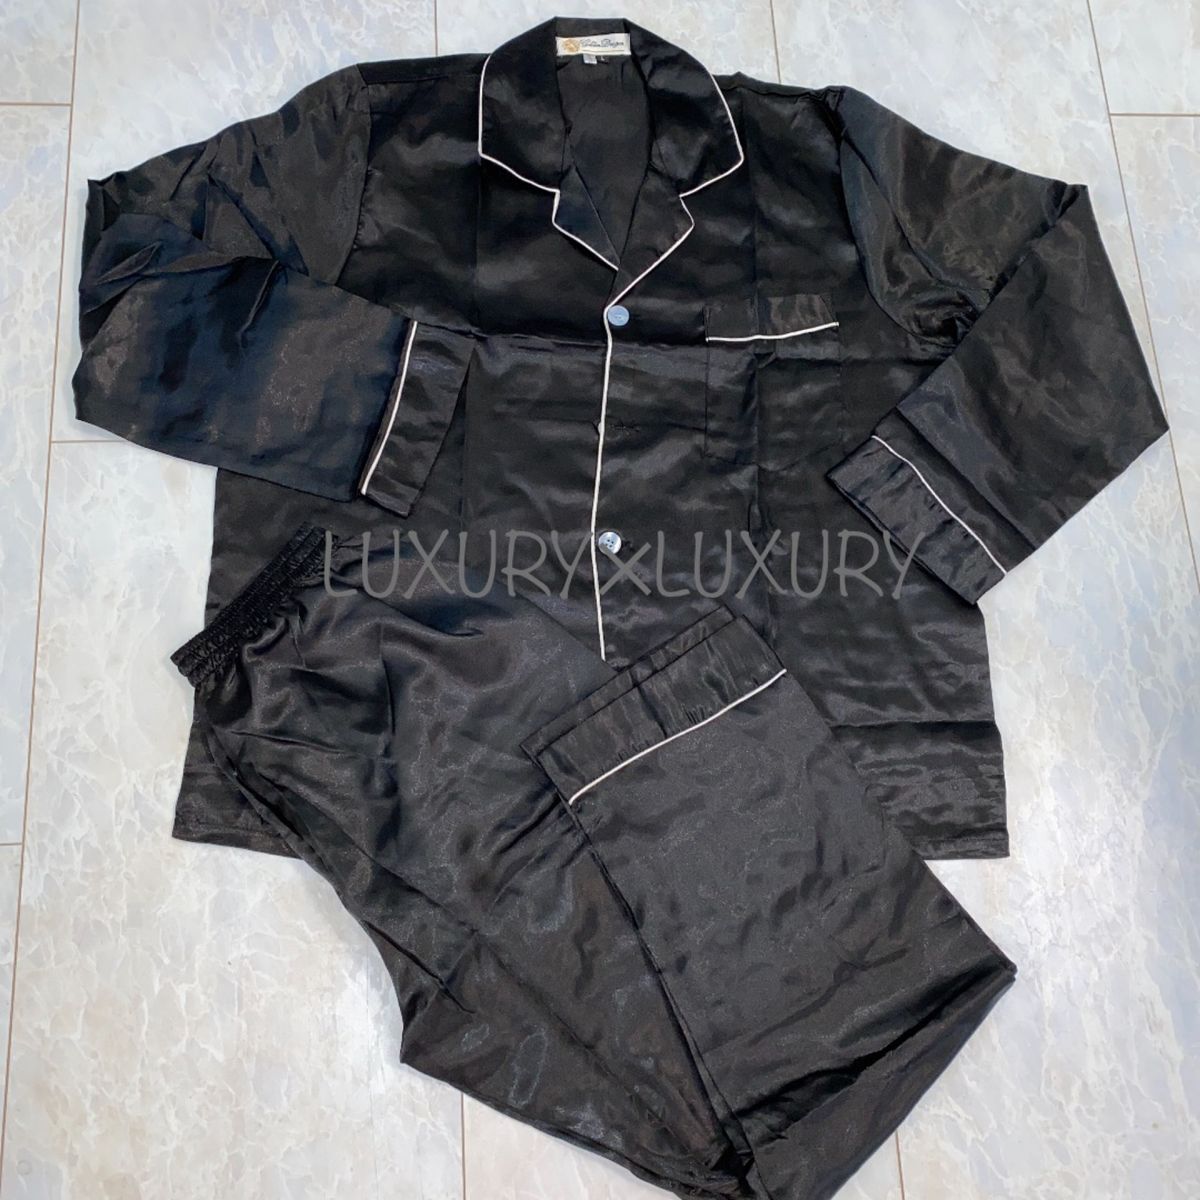 メンズXXL黒絹100%シルクパジャマ上下セットアップルームウエア長袖トップス&ボトムスズボン新品ギフトプレゼント高級部屋着